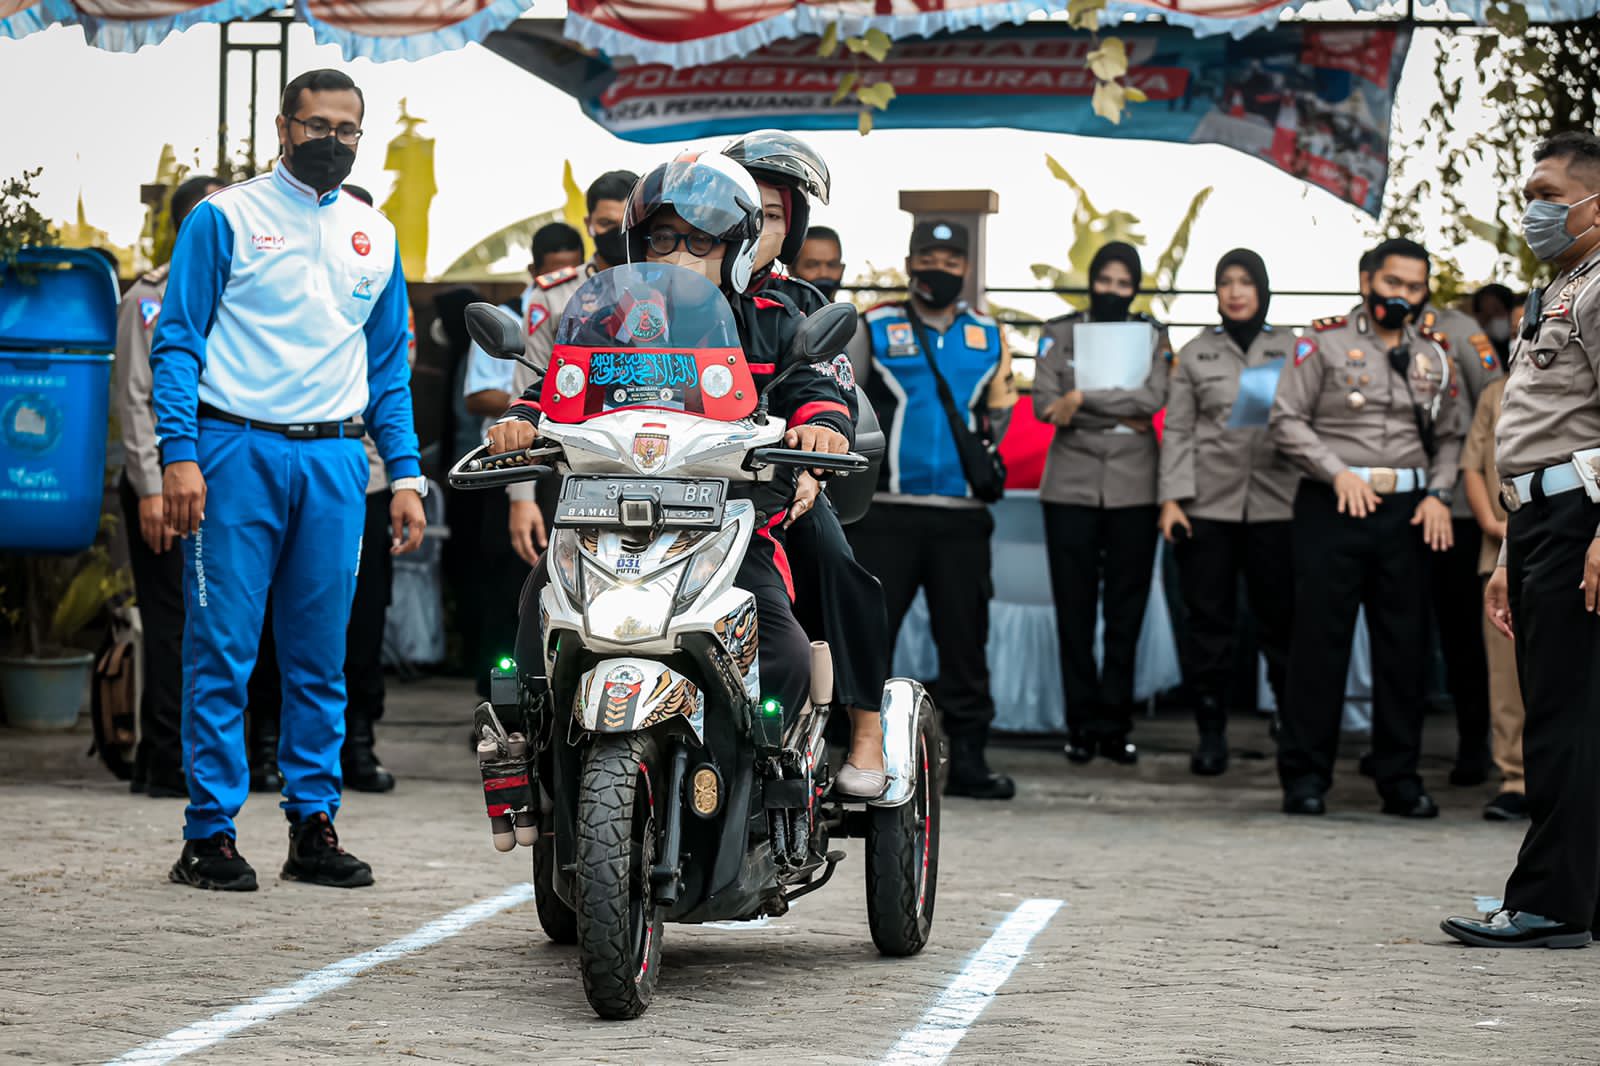 Salut, Polrestabes Surabaya Permudah Disabilitas dan Masyarakat Urus SIM Baru